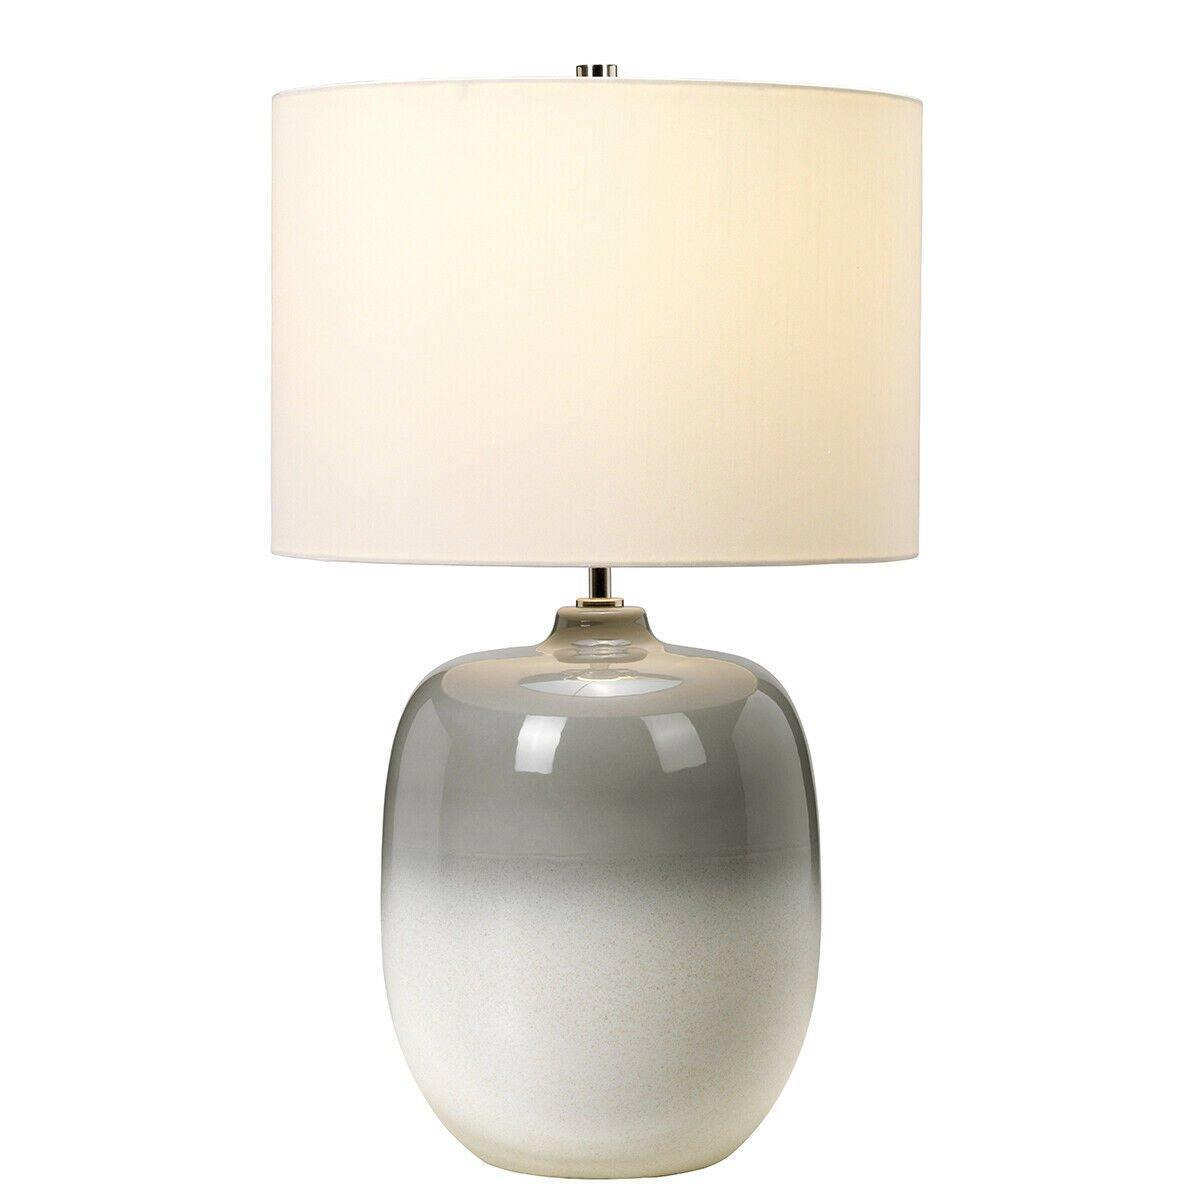 Table Lamp Ivory Shade Light Grey / Chalk White LED E27 60W Bulb - image 1